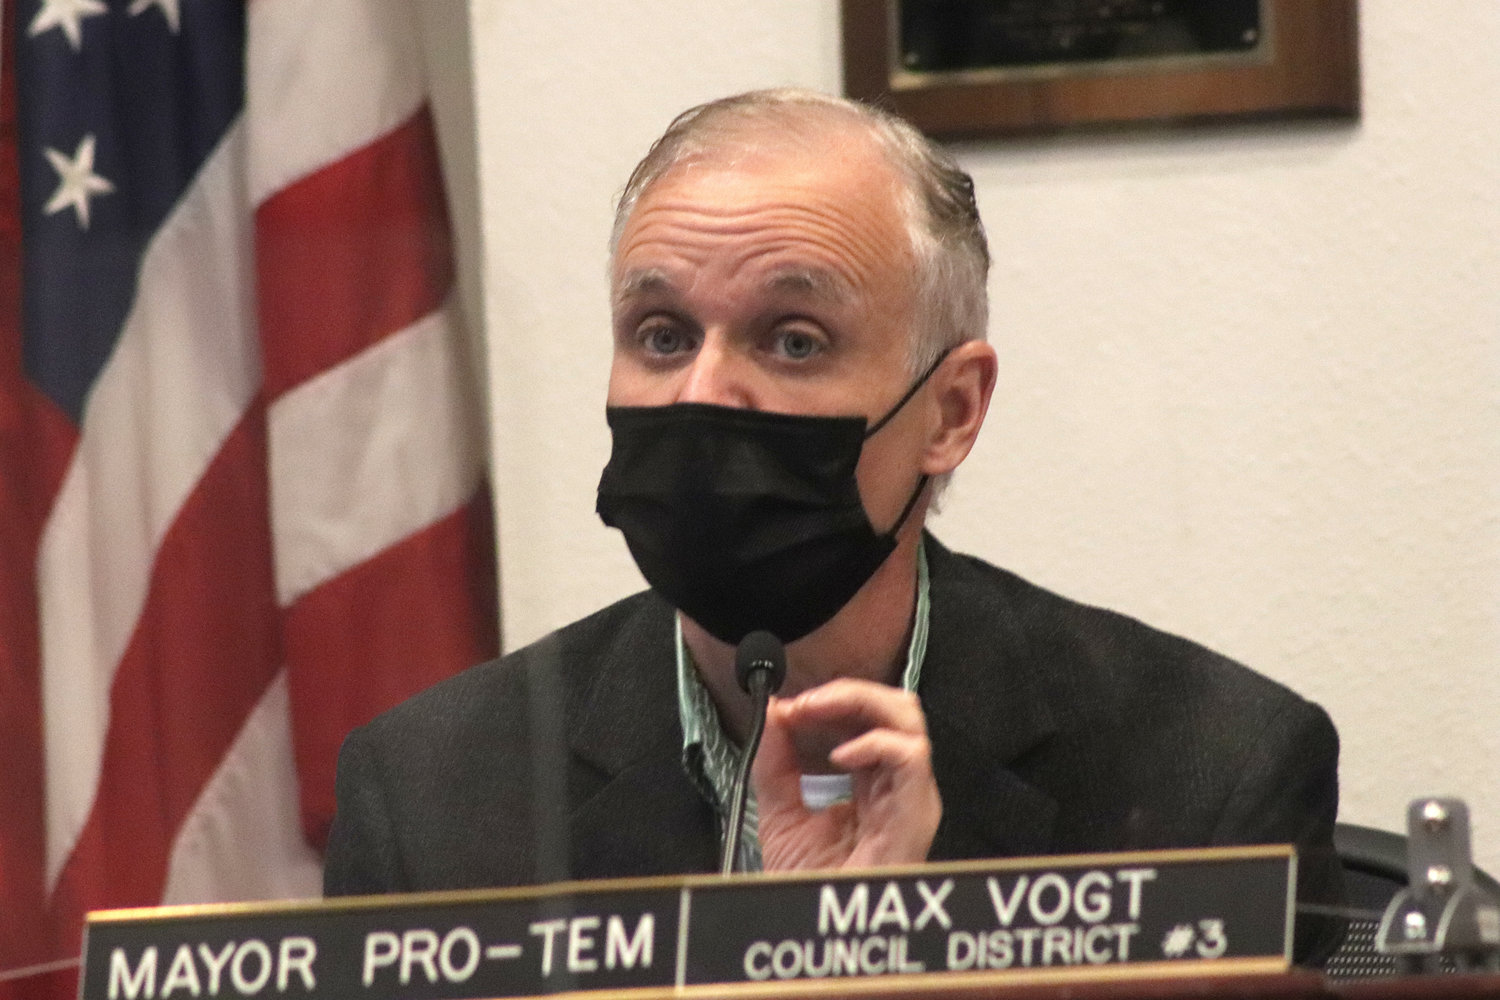 Councilor Max Vogt